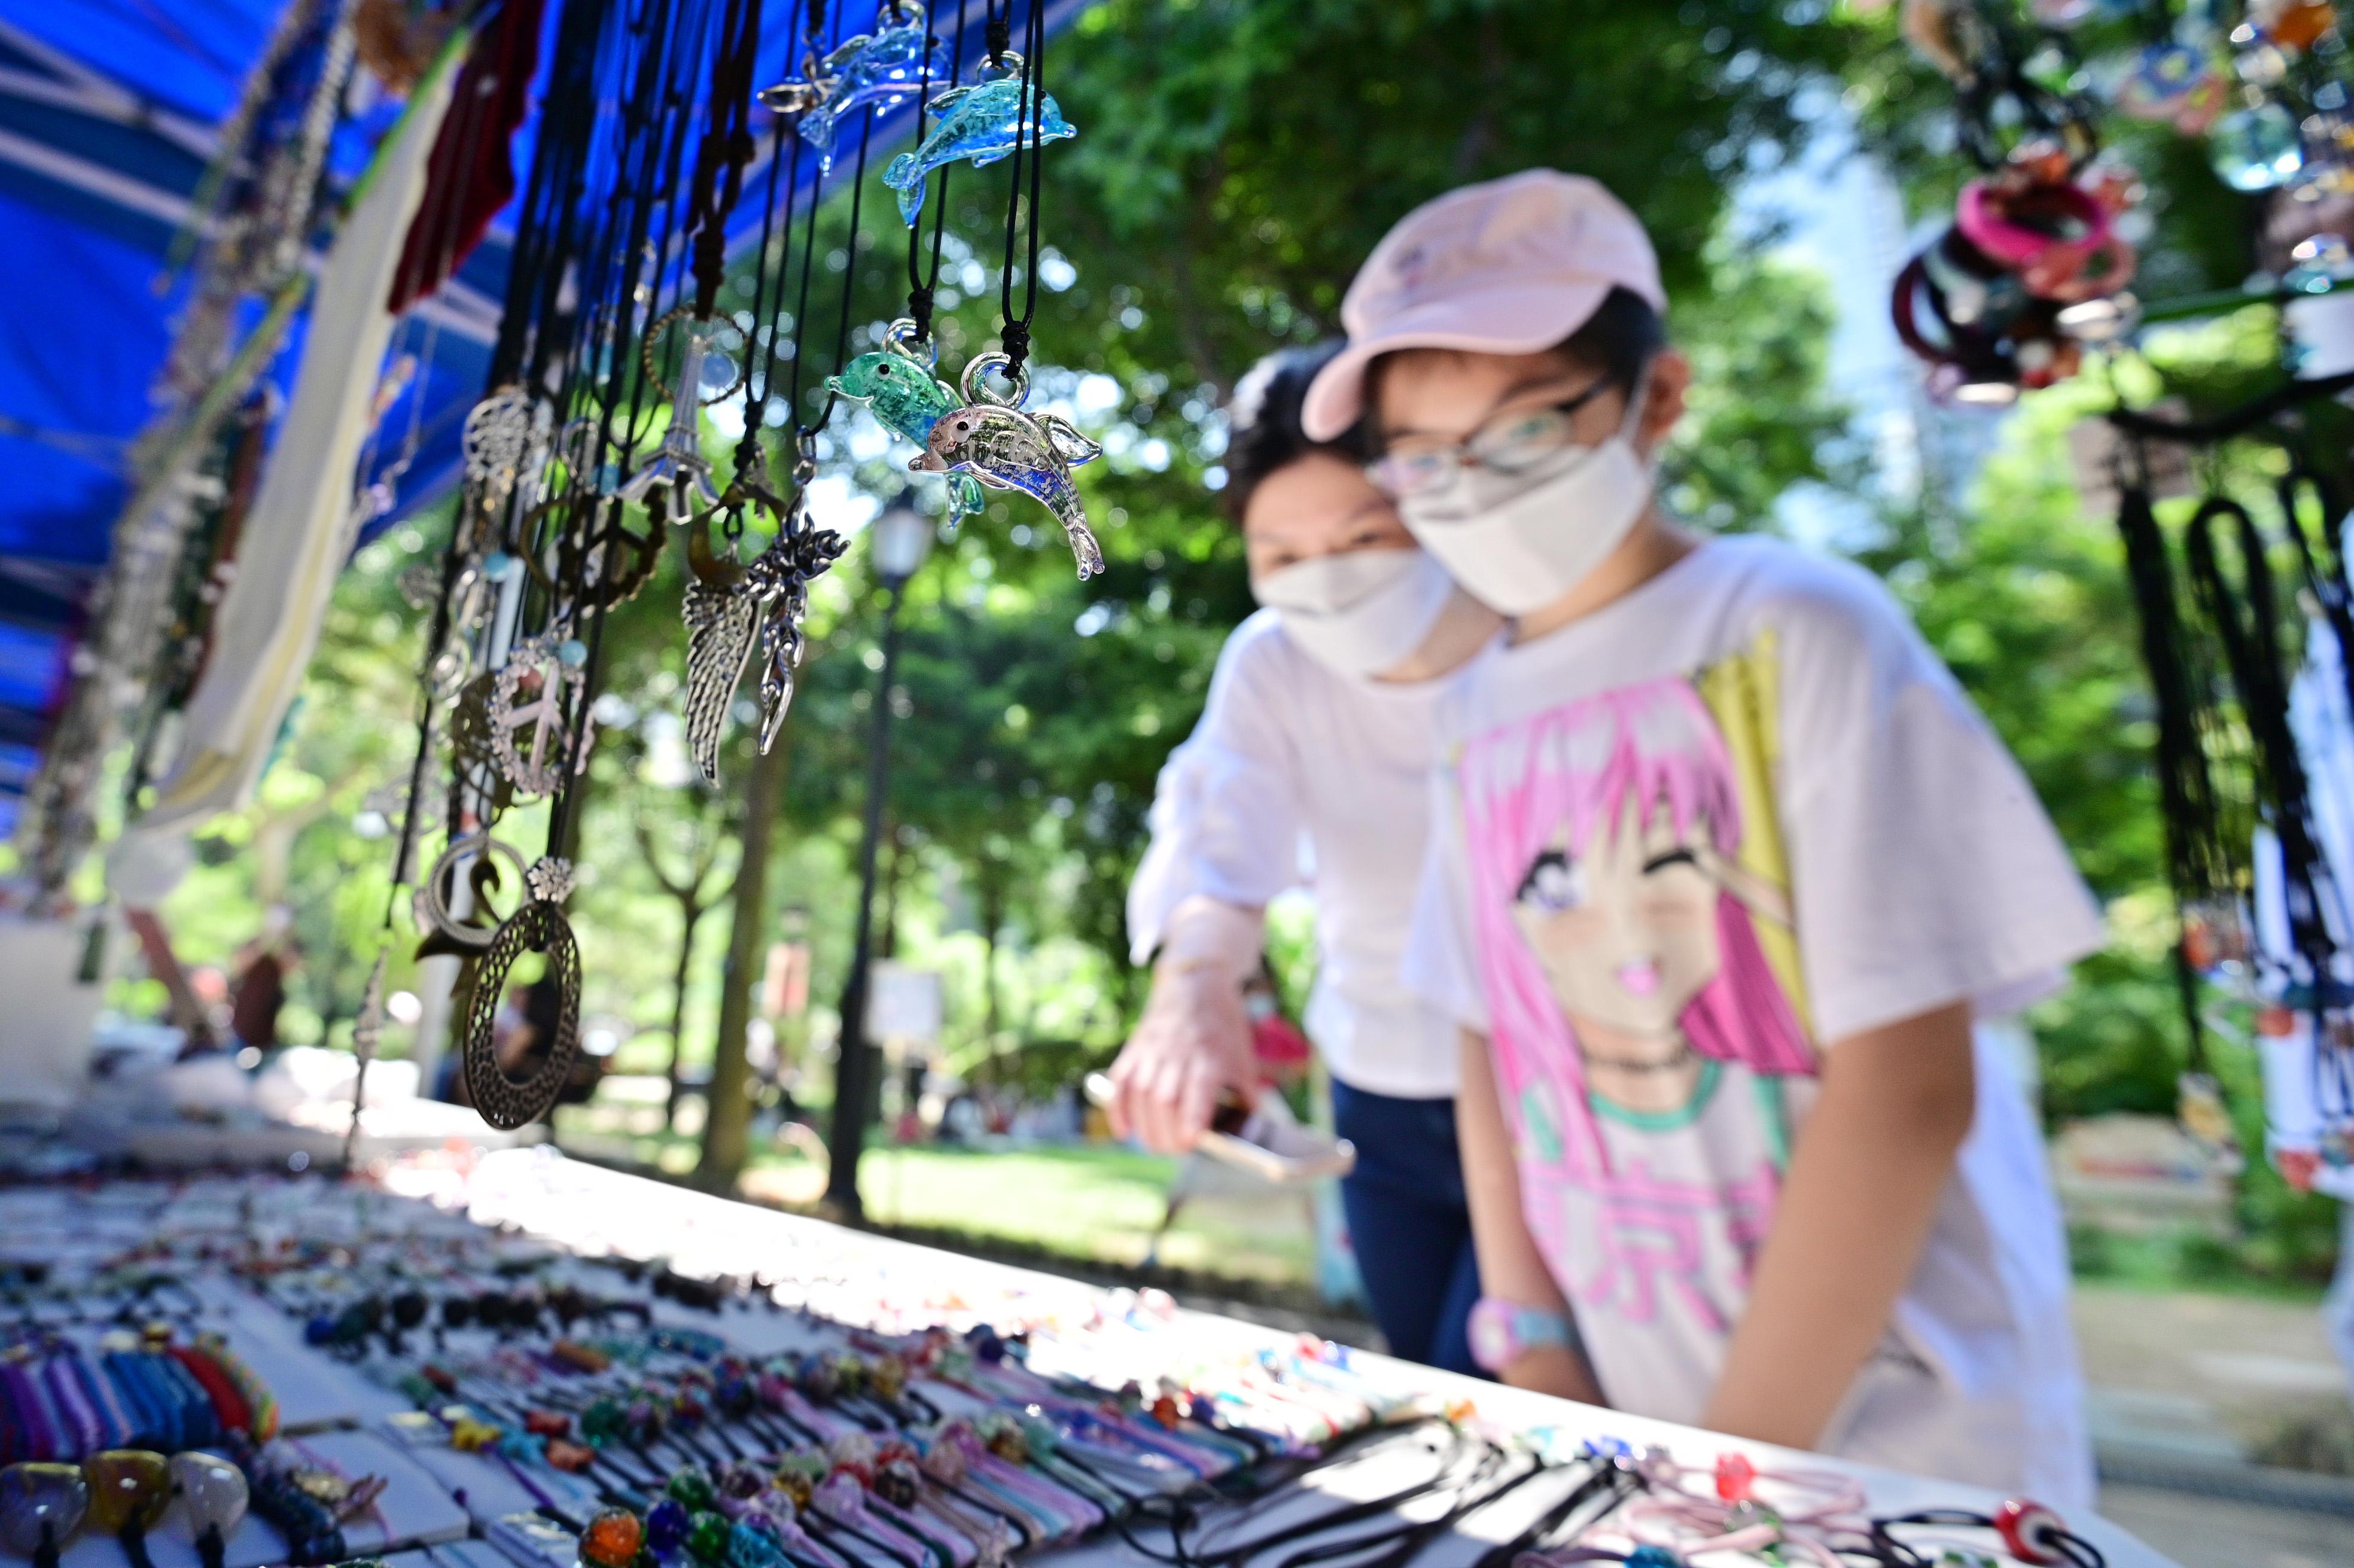 康樂及文化事務署邀請市民參與「藝趣坊」活動。活動於二○二三年一月一日至十二月三十一日期間逢星期六、日及公眾假期在香港公園舉行，旨在培養公眾對藝術的興趣。